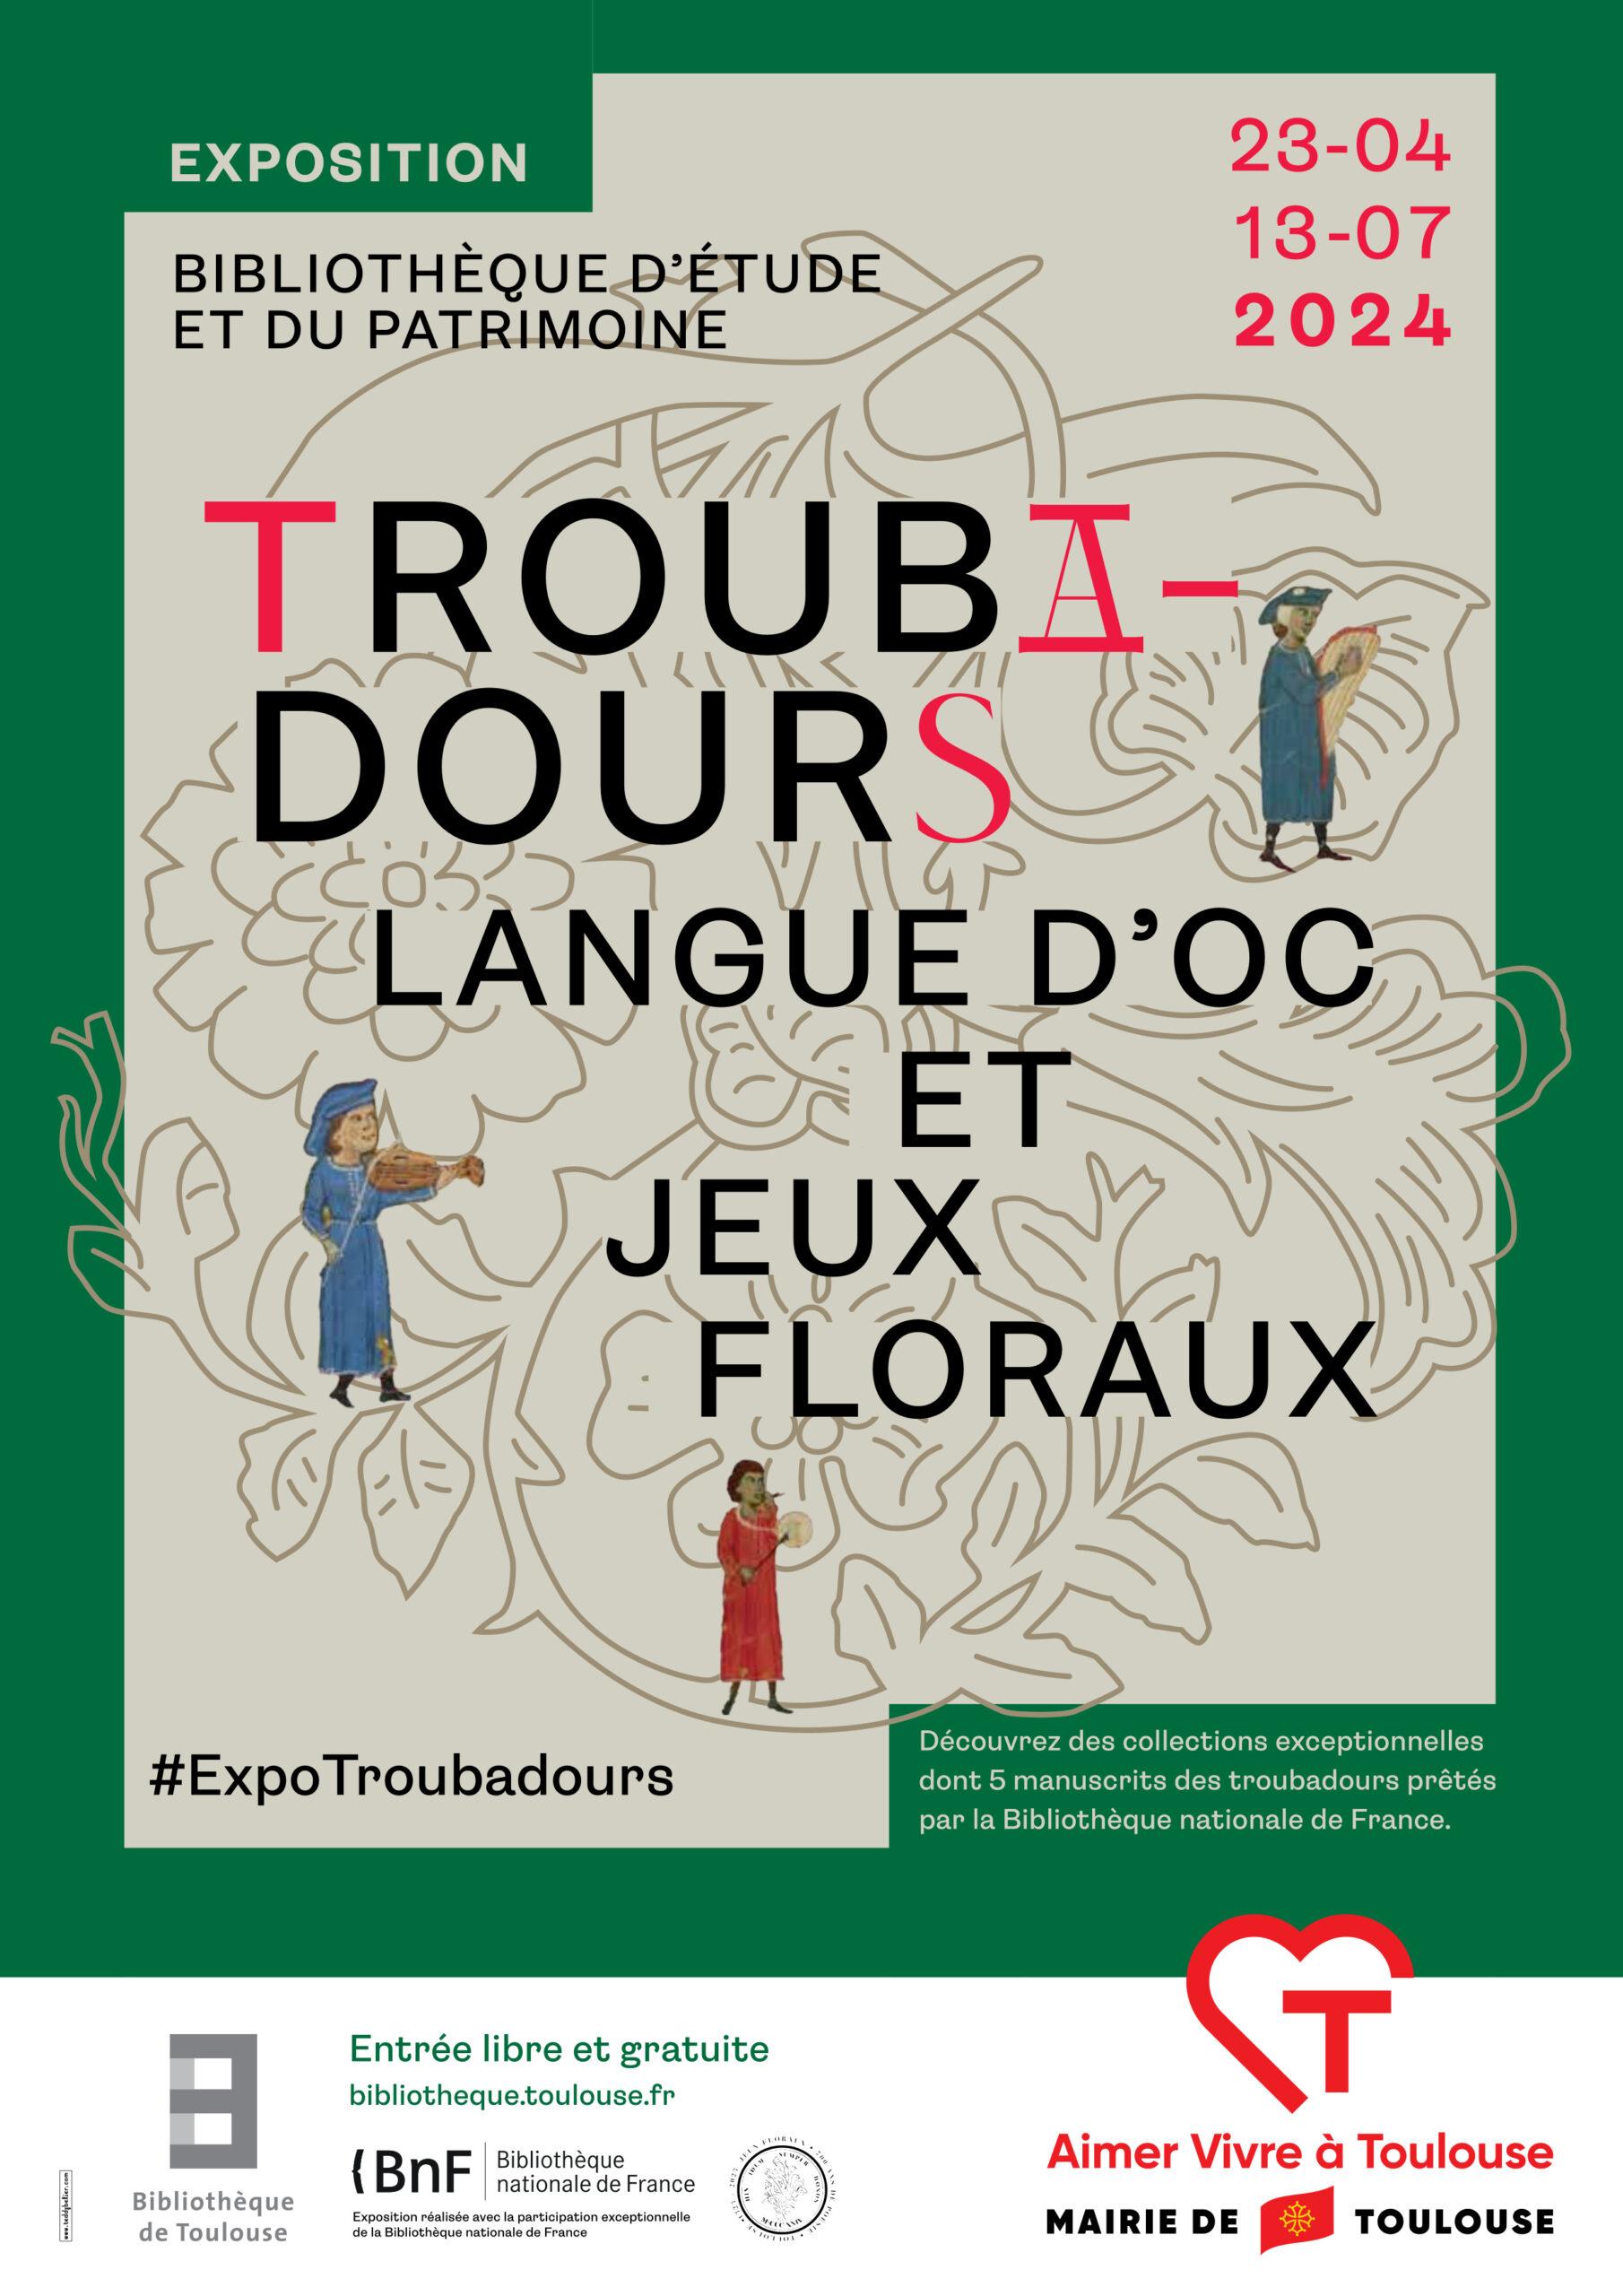 PUB-Troubadours-jeux-floraux-scaled.jpg